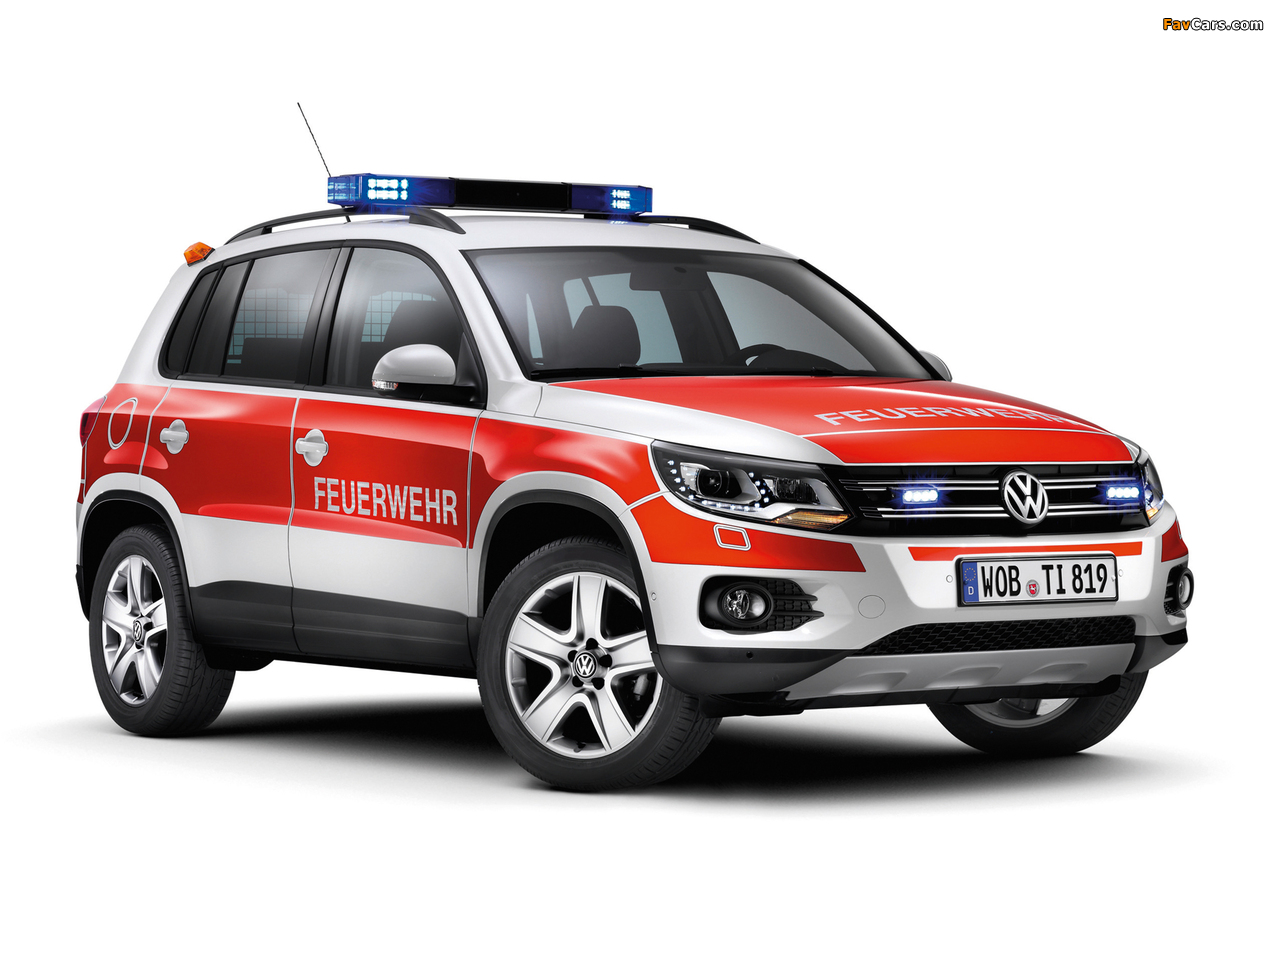 Images of Volkswagen Tiguan Track & Style Feuerwehr 2011 (1280 x 960)